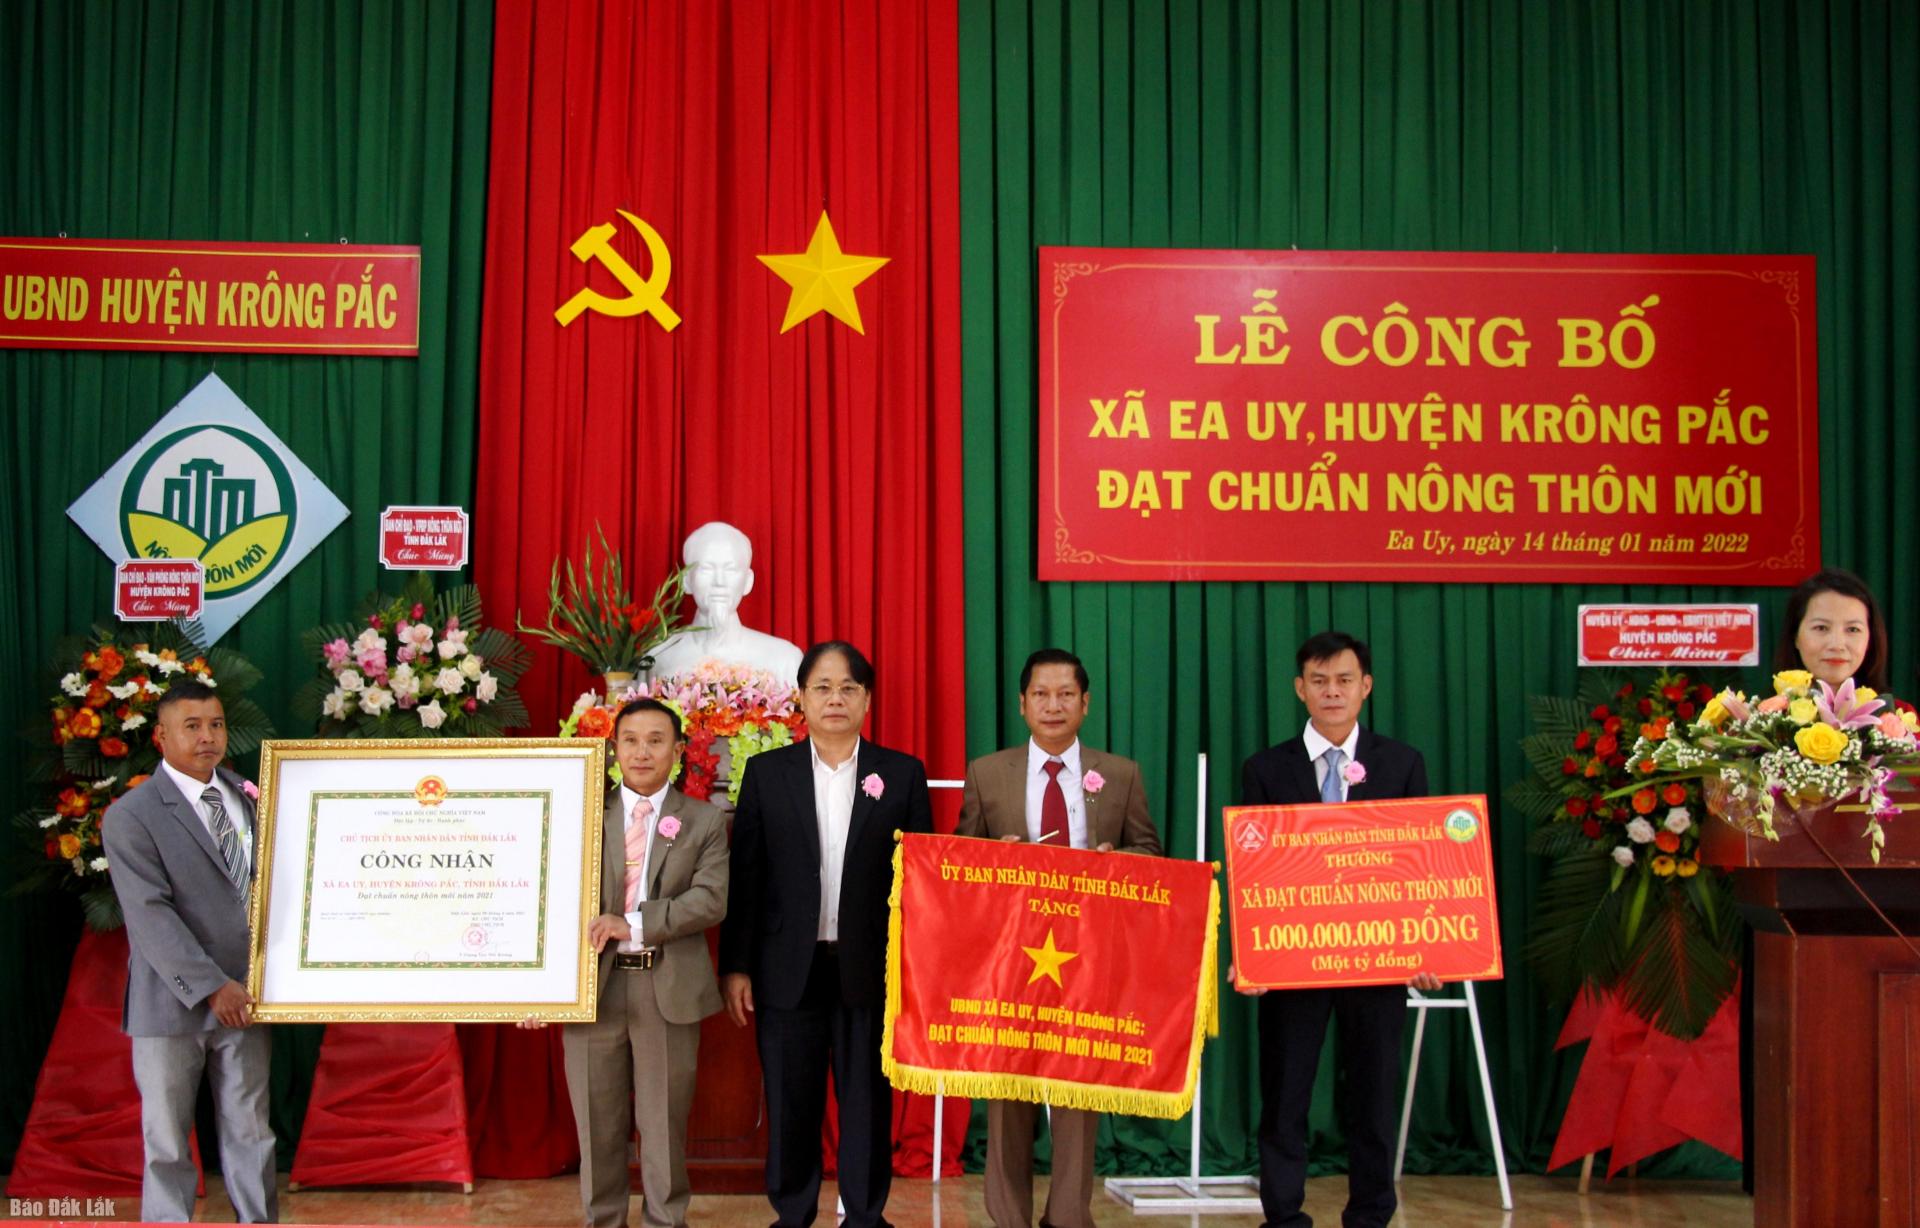 Công bố xã Ea Uy, huyện Krông Pắc đạt chuẩn nông thôn mới